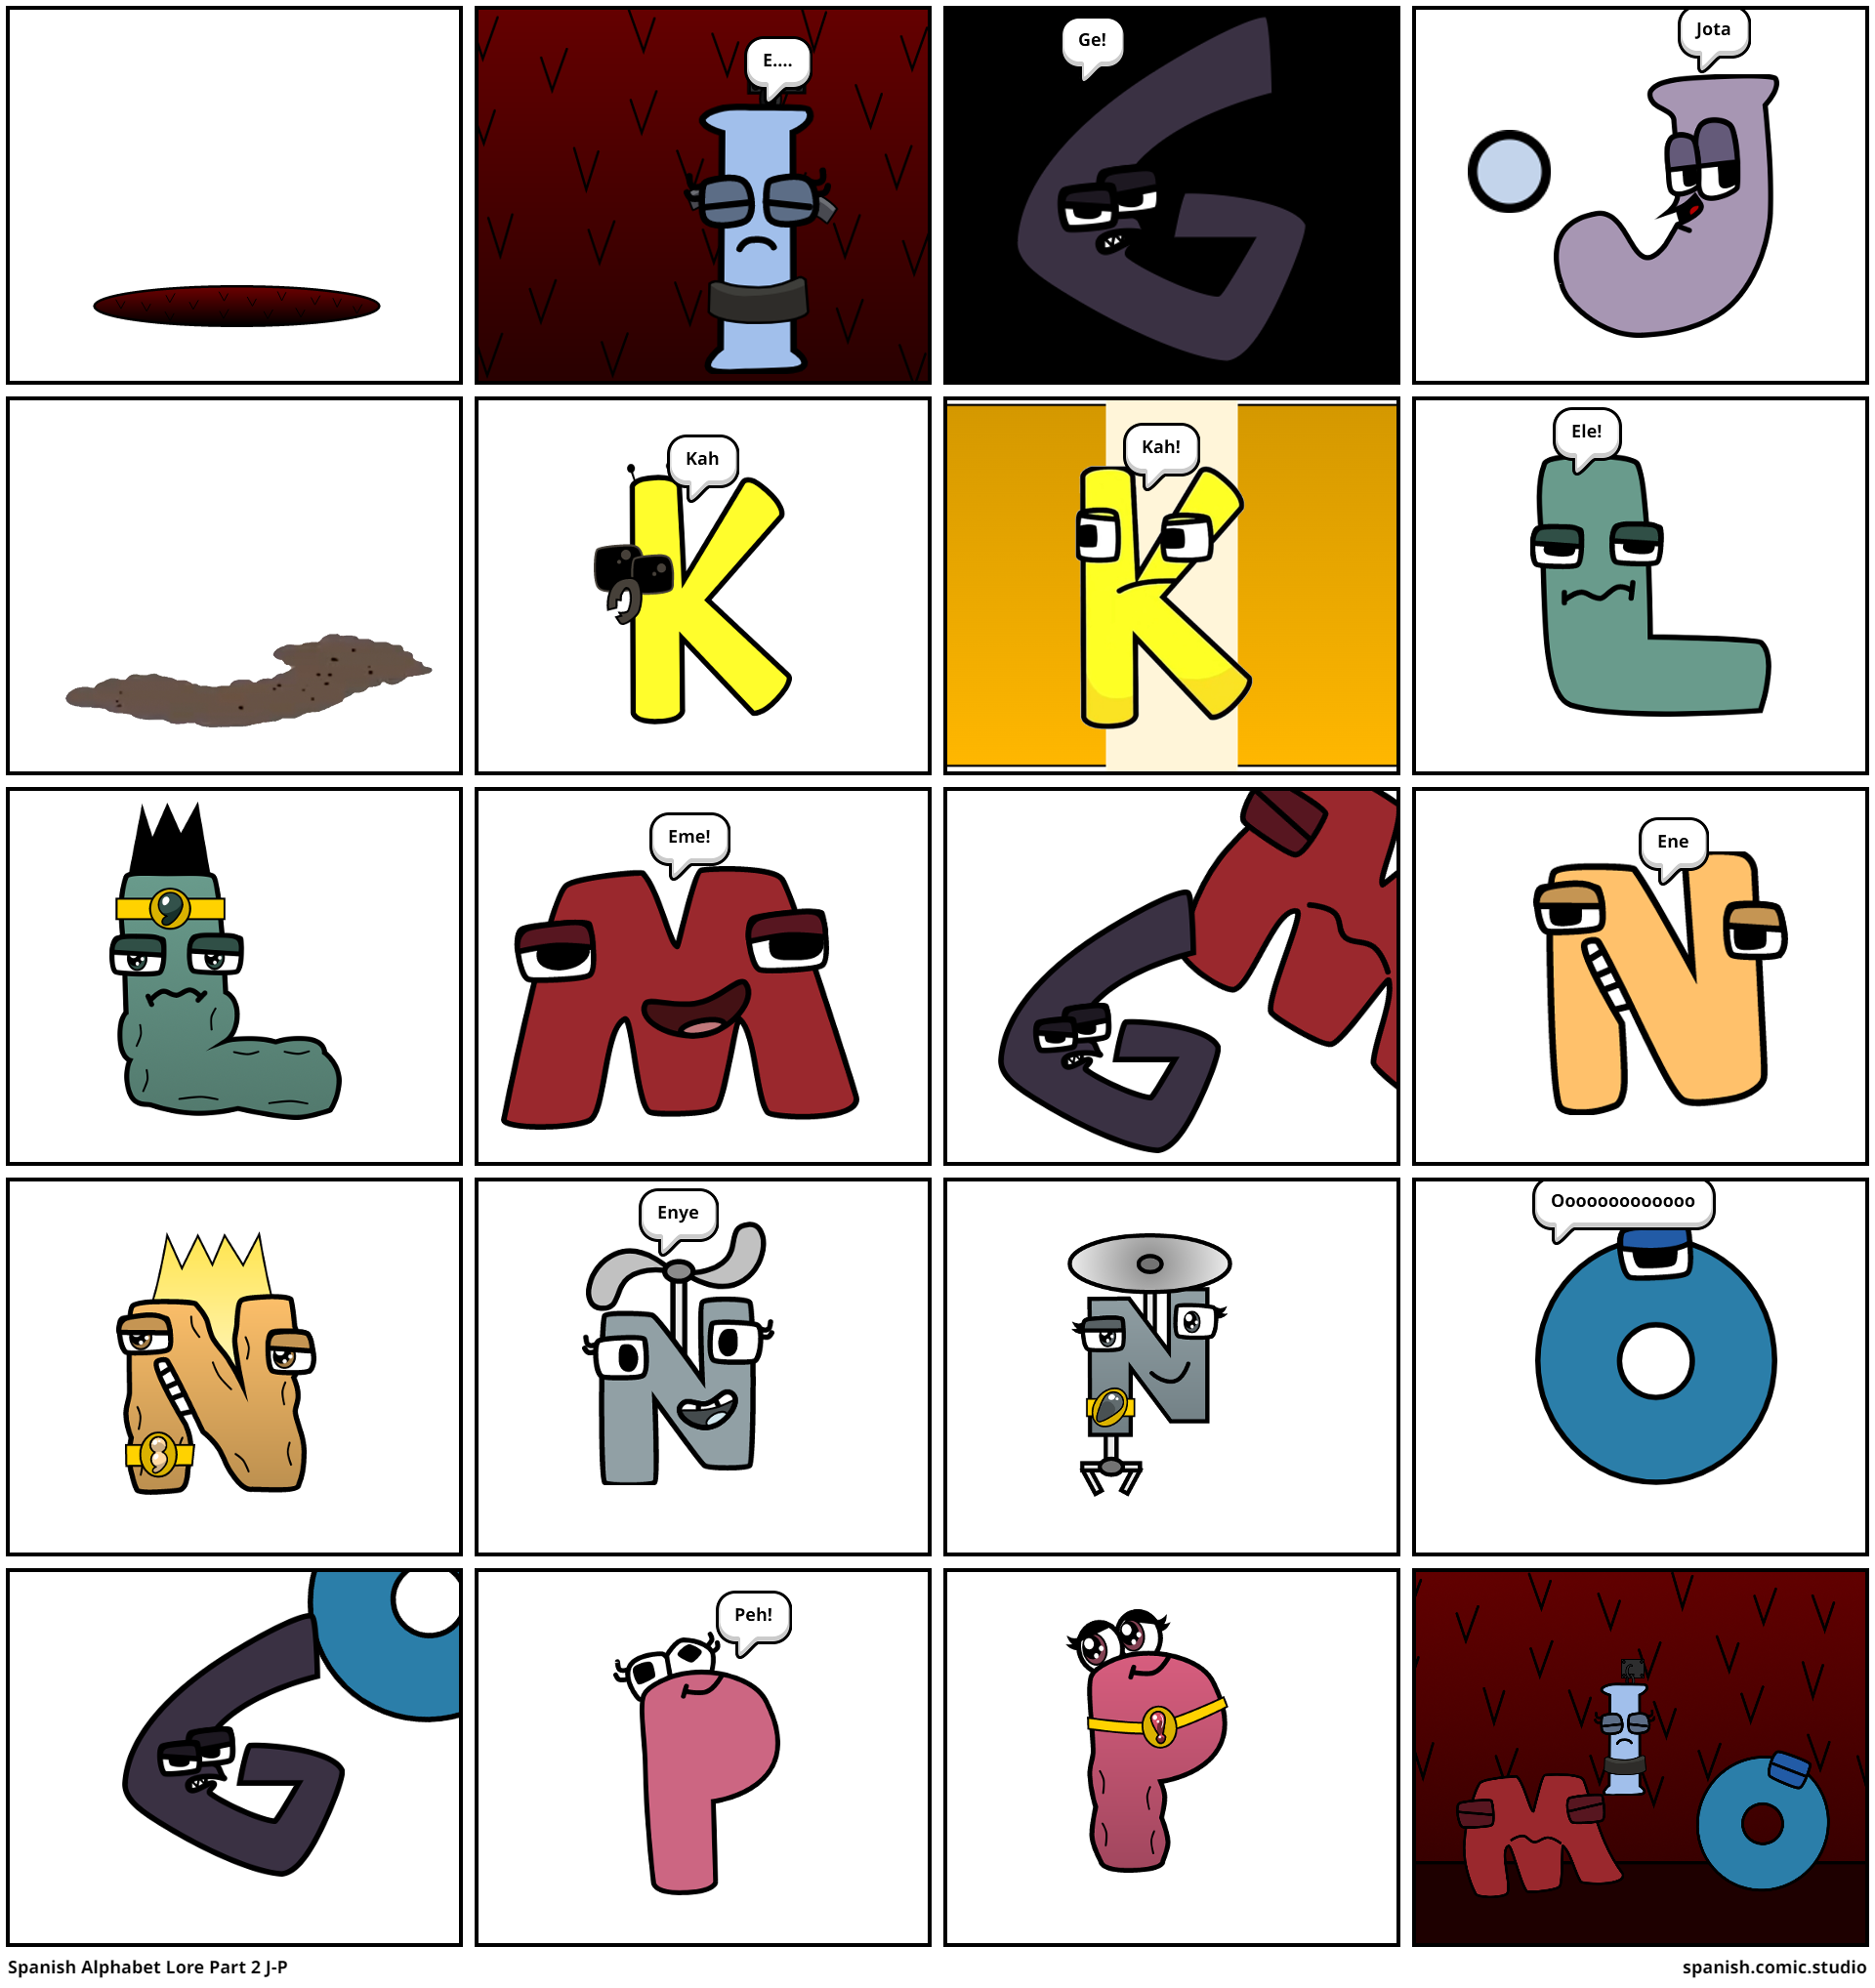 Spanish Alphabet Lore Part 2 J-P - Comic Studio